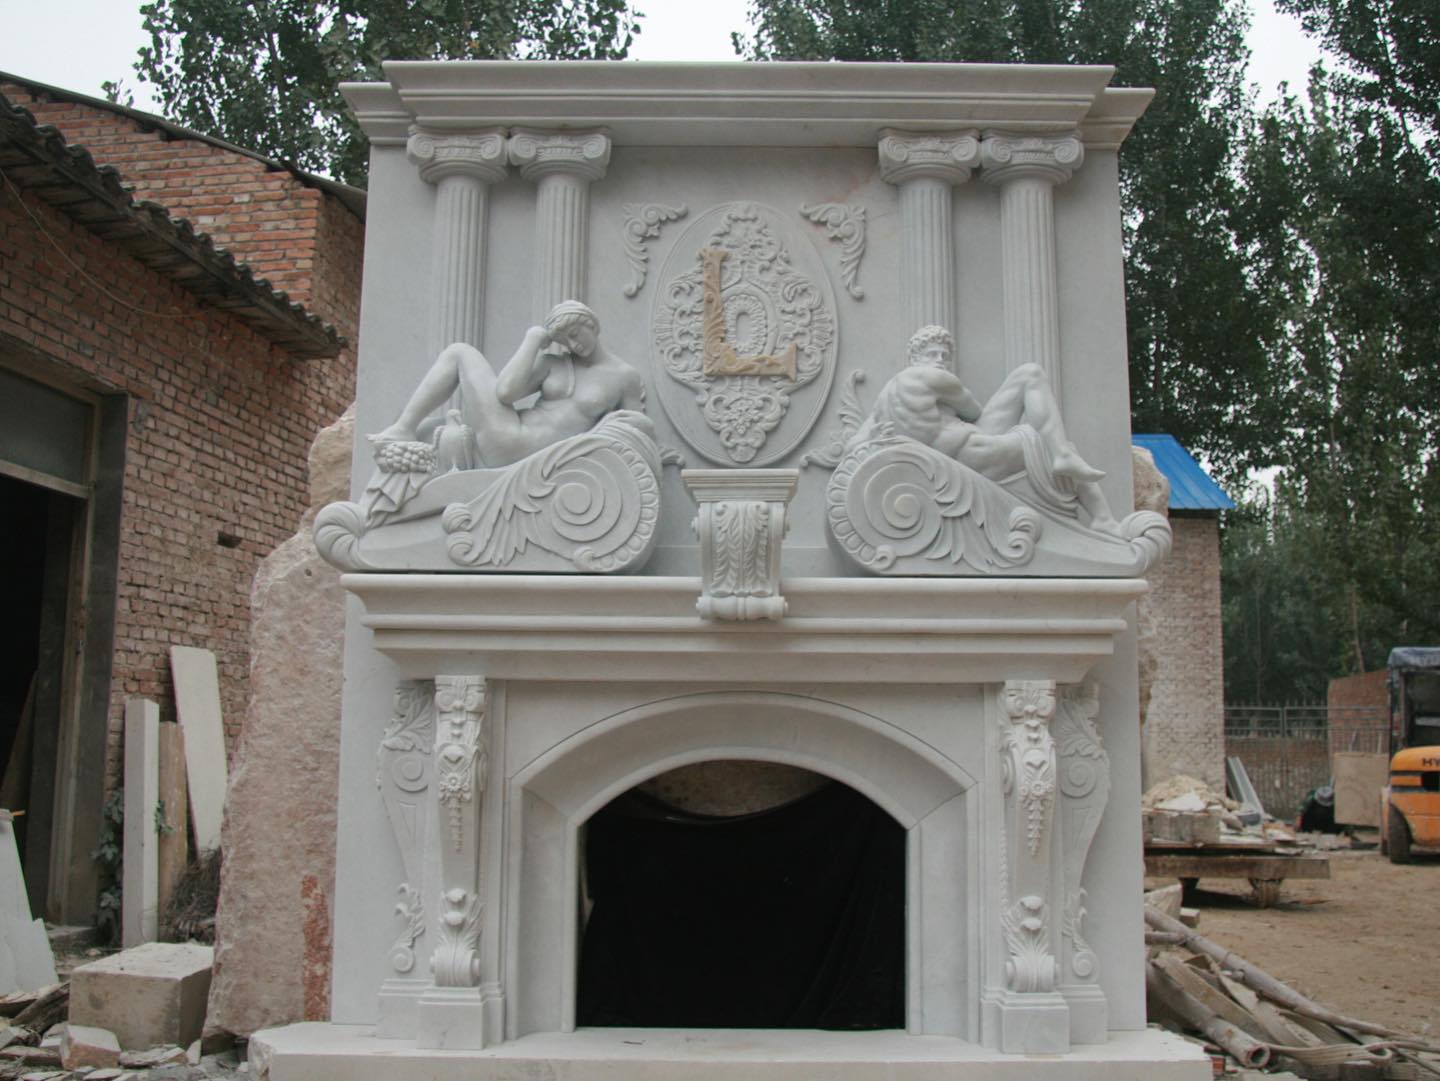 Mantel fireplace